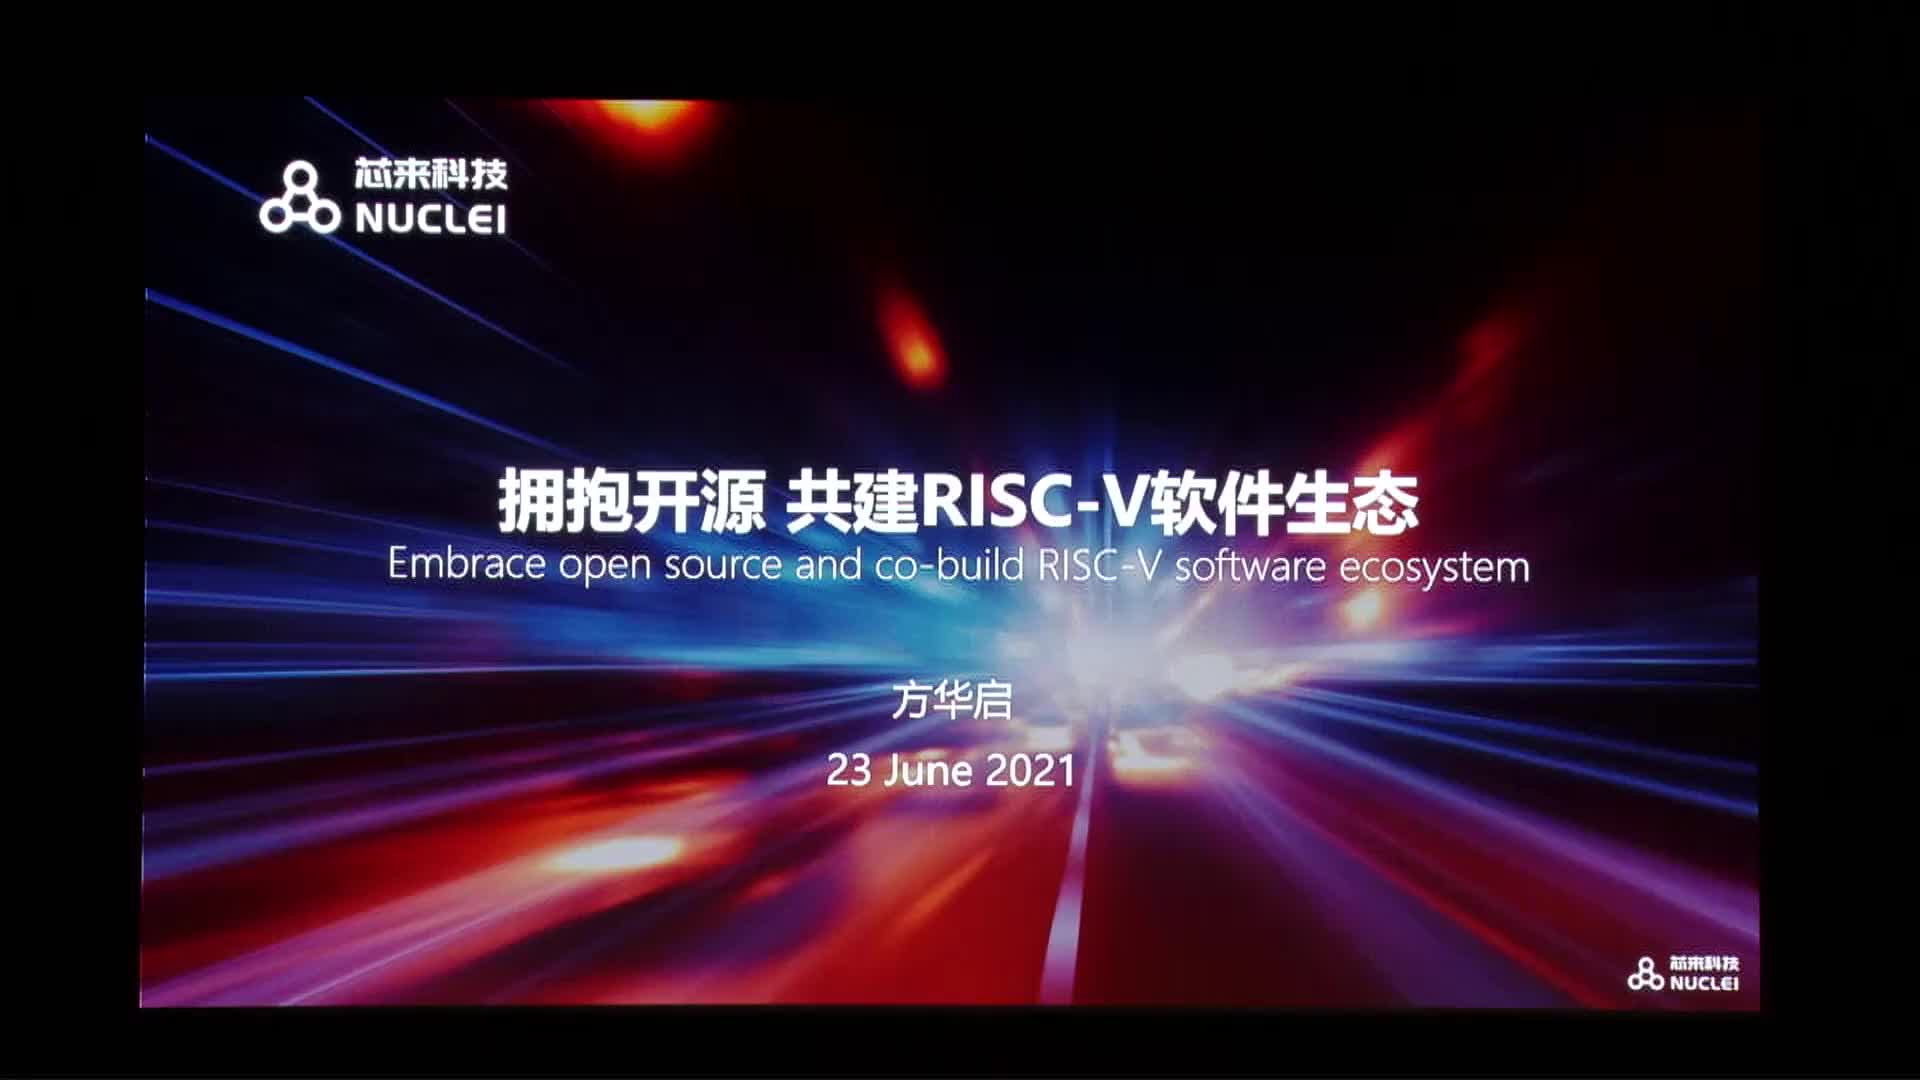 方华启@芯来科技 - 拥抱开源，共建RISC-V软件生态 - 第一届 RISC-V 中国峰会_batch